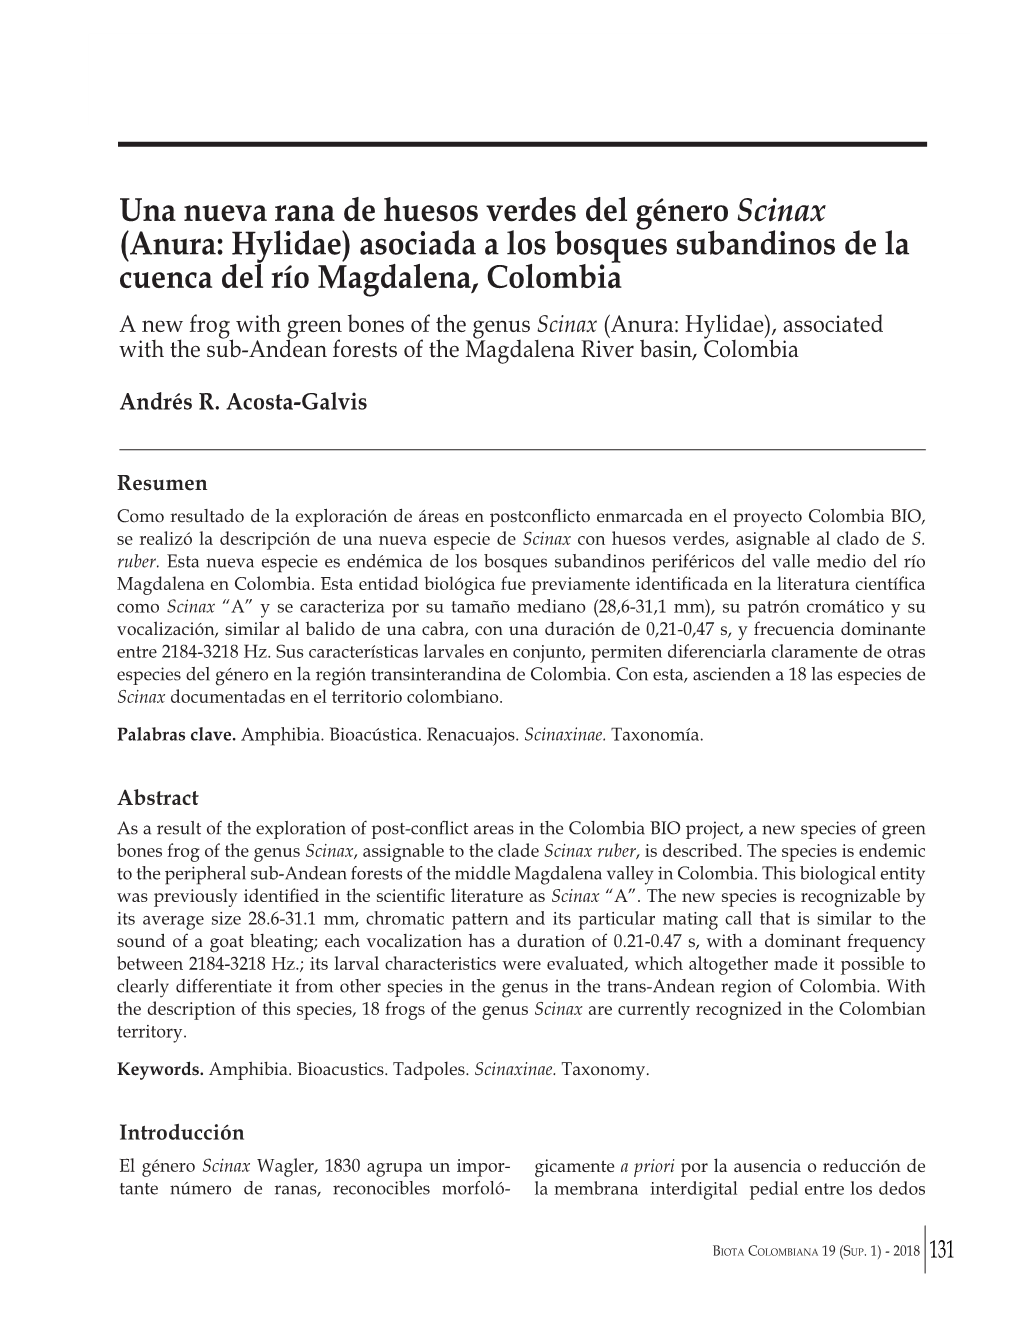 Una Nueva Rana De Huesos Verdes Del Género Scinax (Anura: Hylidae) Asociada a Los Bosques Subandinos De La Cuenca Del Río Magdalena, Colombia